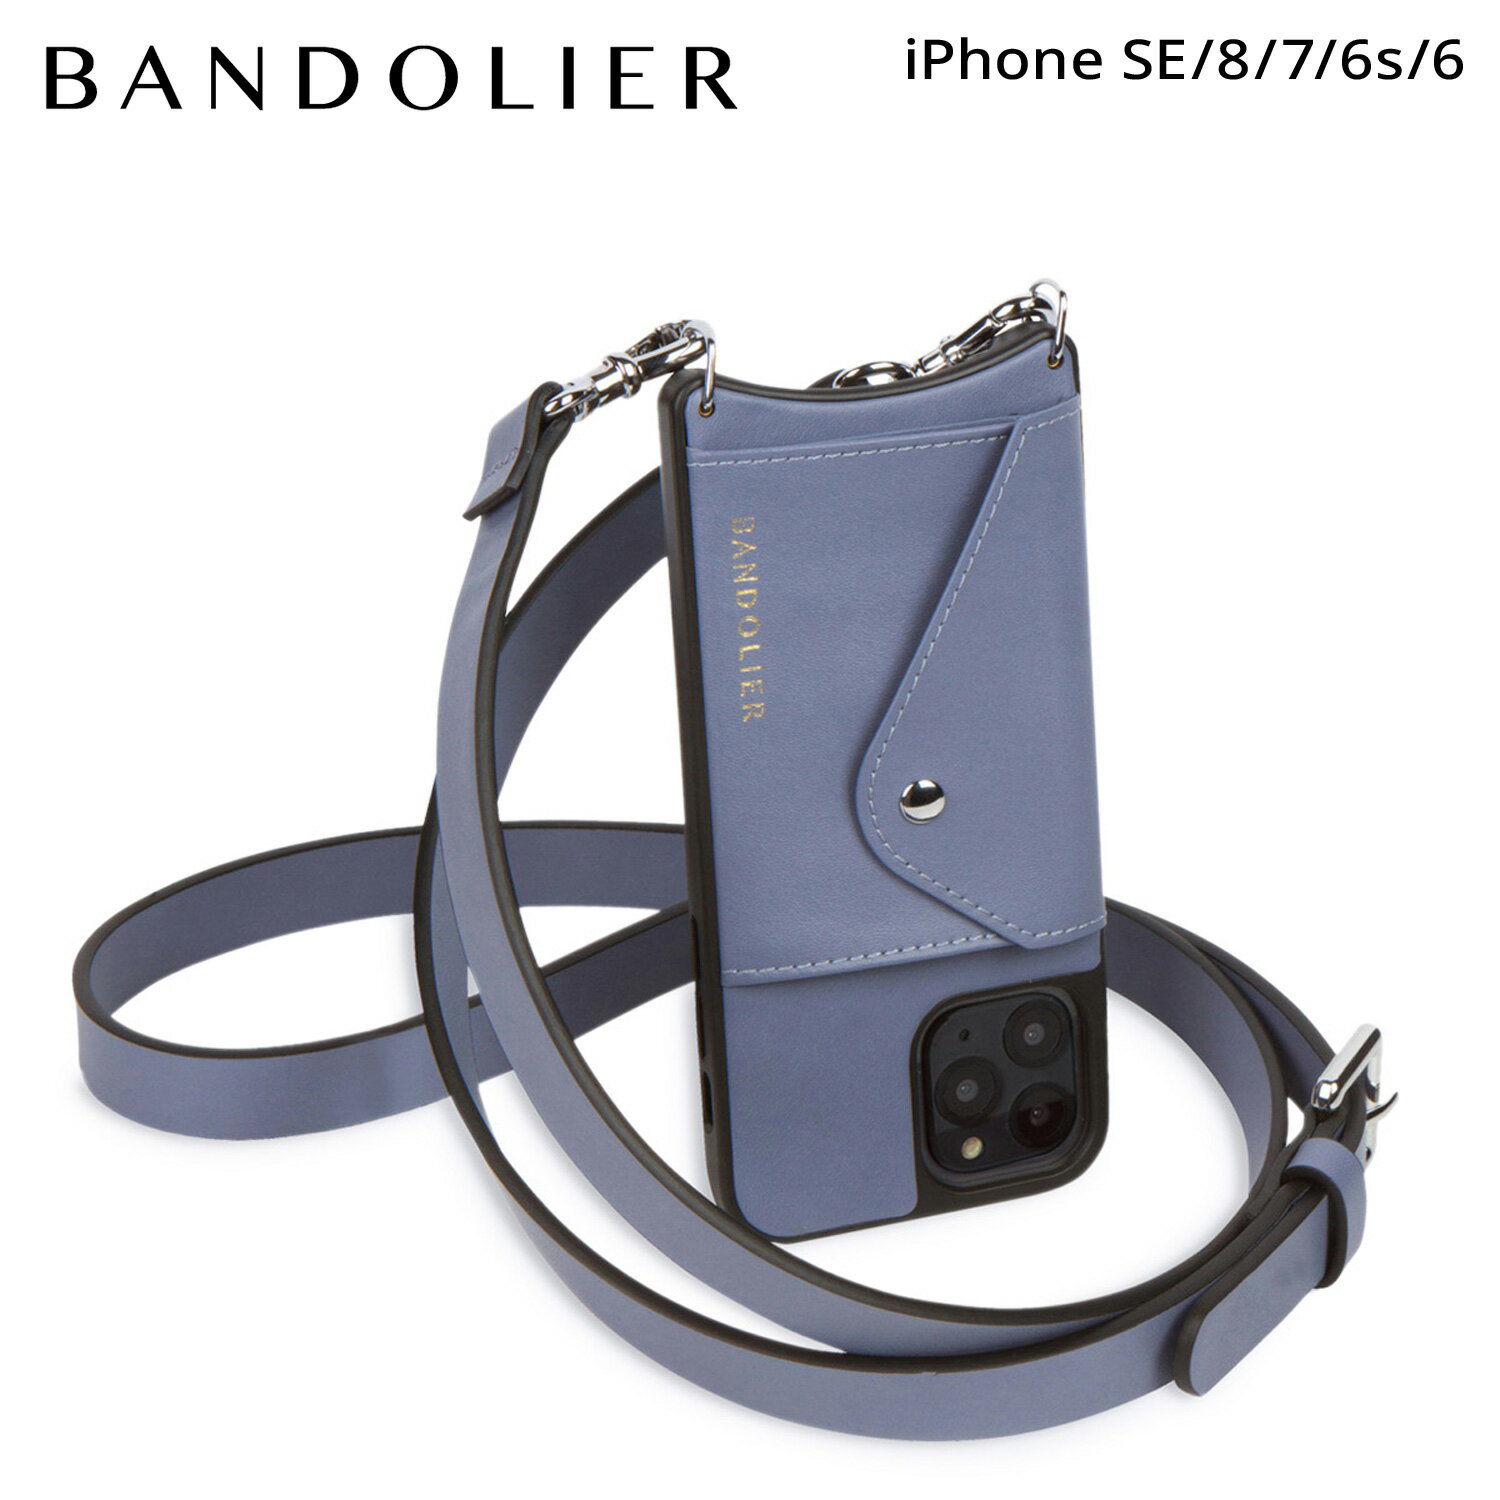 バンドリヤー BANDOLIER iPhone SE SE2 8 iPhone 7 6s ケース スマホケース 携帯 ショルダー アイフォン ヘイリー サイド スロット ブルー スモーク メンズ レディース HAILEY SIDE SLOT BLUE SMOKE ブルー 14HADPLS